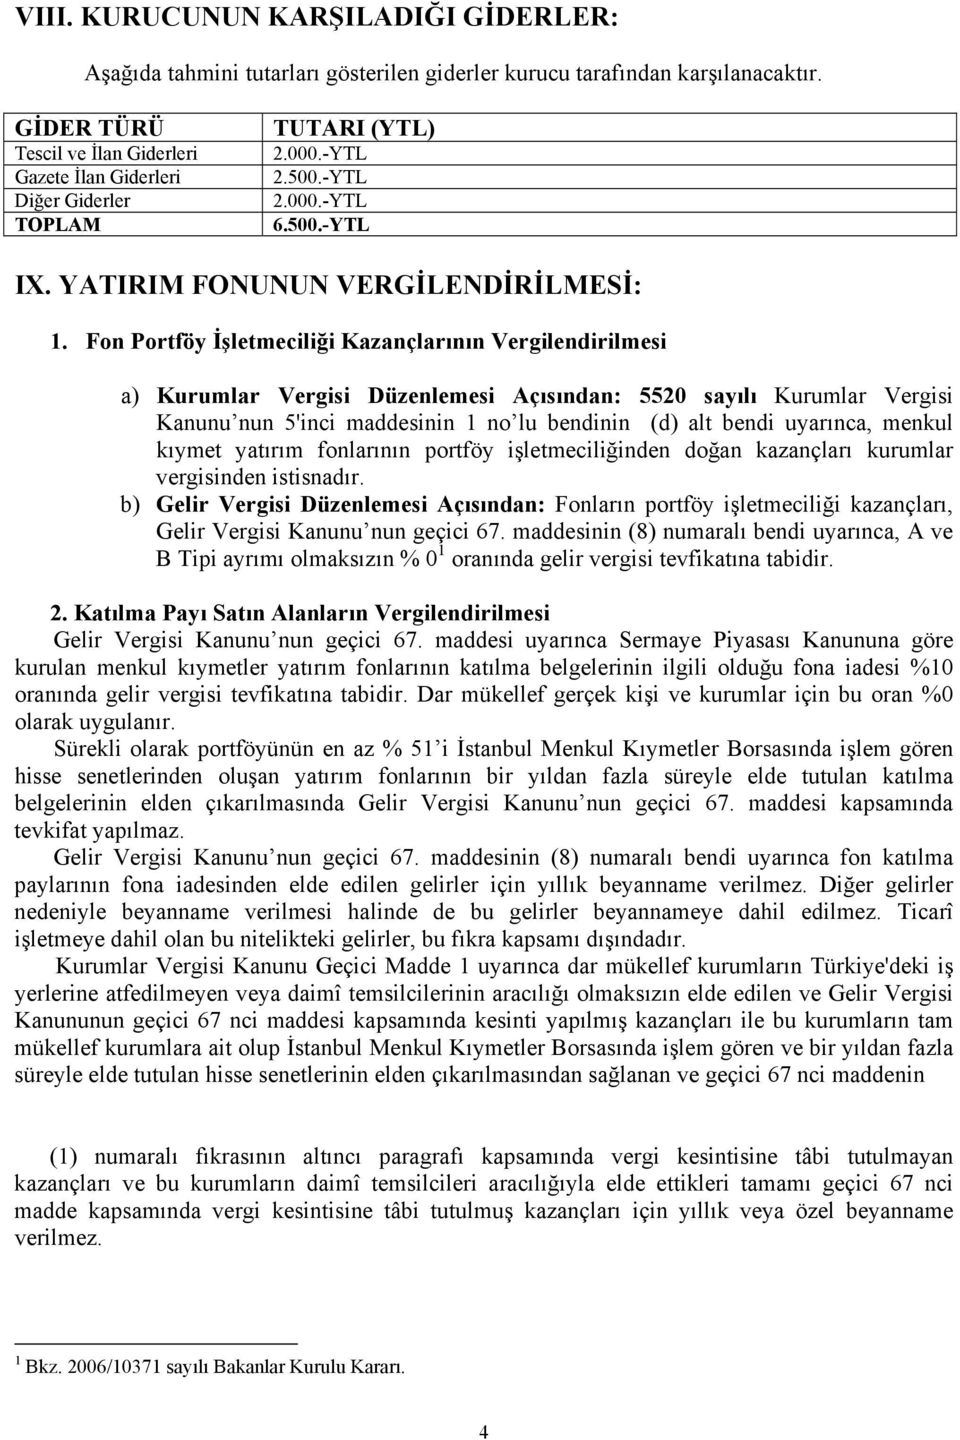 Fon Portföy İşletmeciliği Kazançlarının Vergilendirilmesi a) Kurumlar Vergisi Düzenlemesi Açısından: 5520 sayılı Kurumlar Vergisi Kanunu nun 5'inci maddesinin 1 no lu bendinin (d) alt bendi uyarınca,